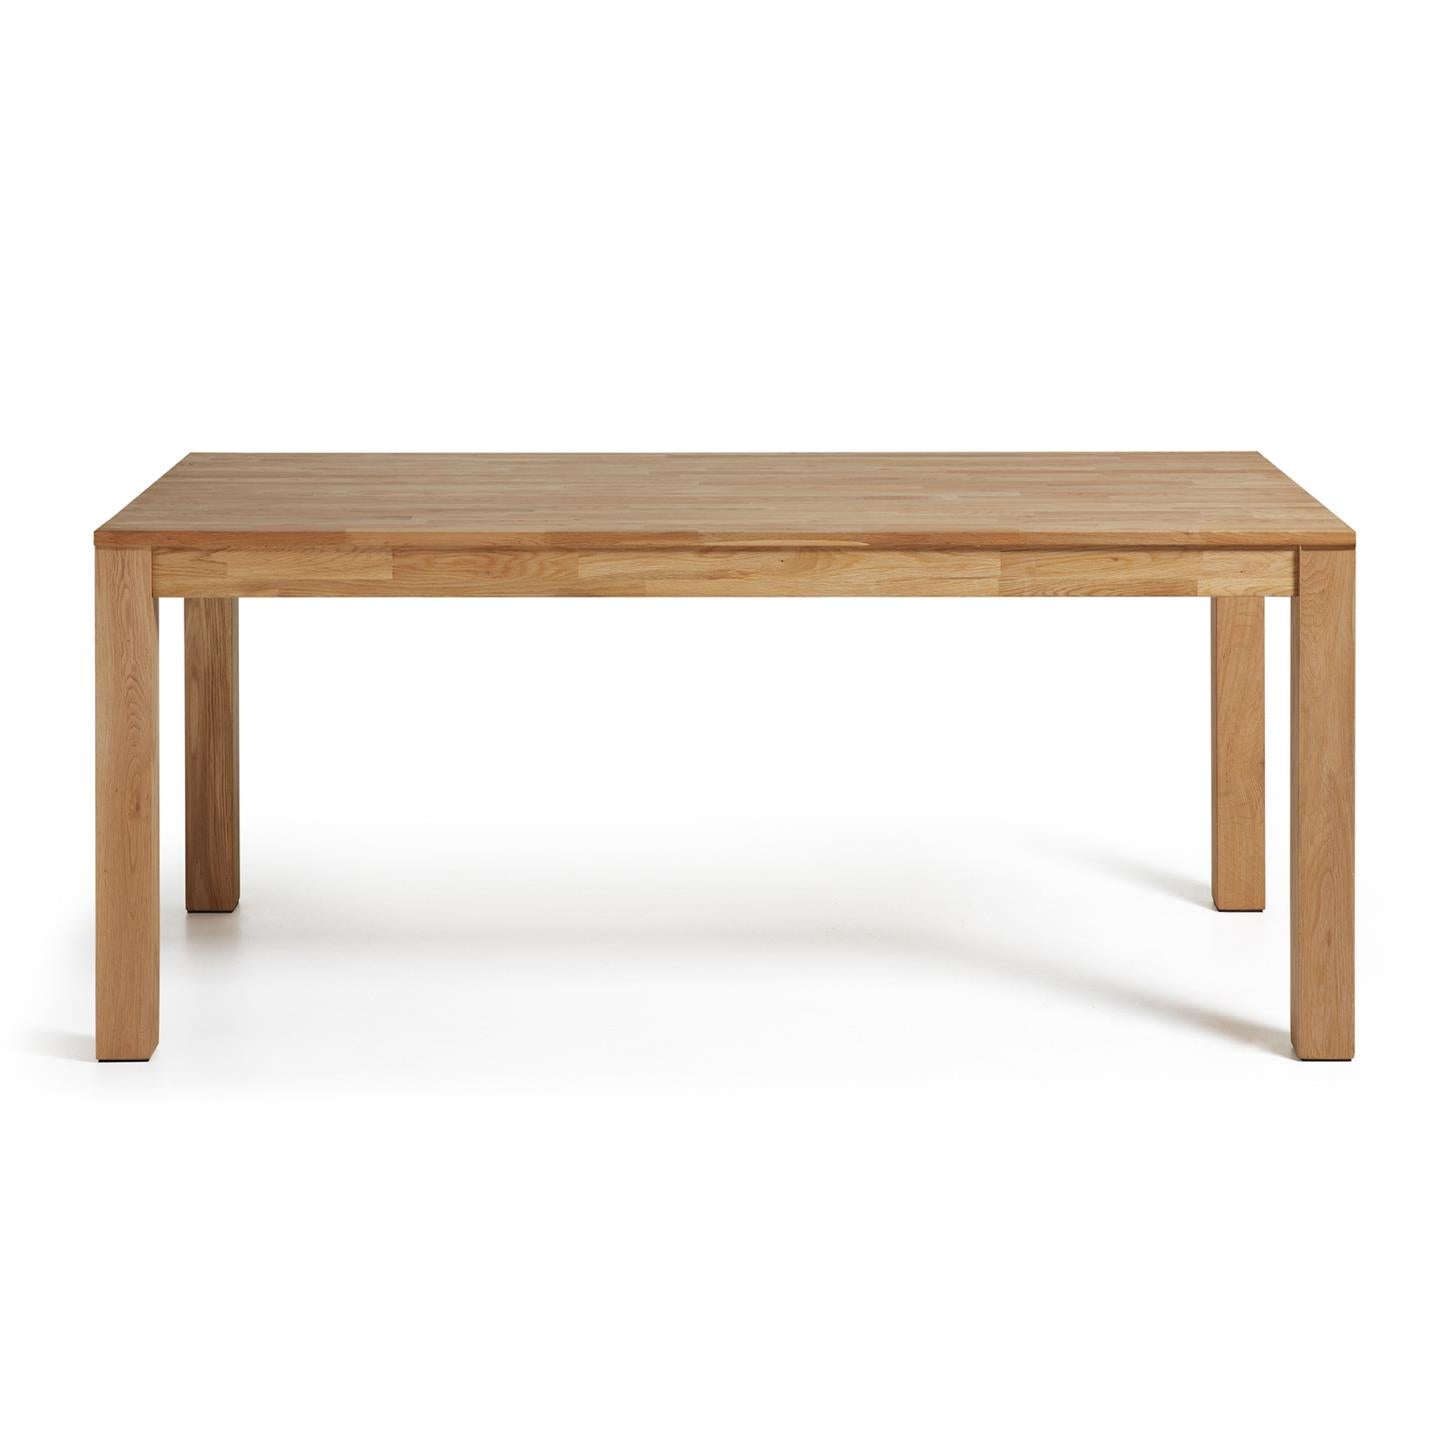 Isbel kihúzható asztal 140 (220)x 90 cm